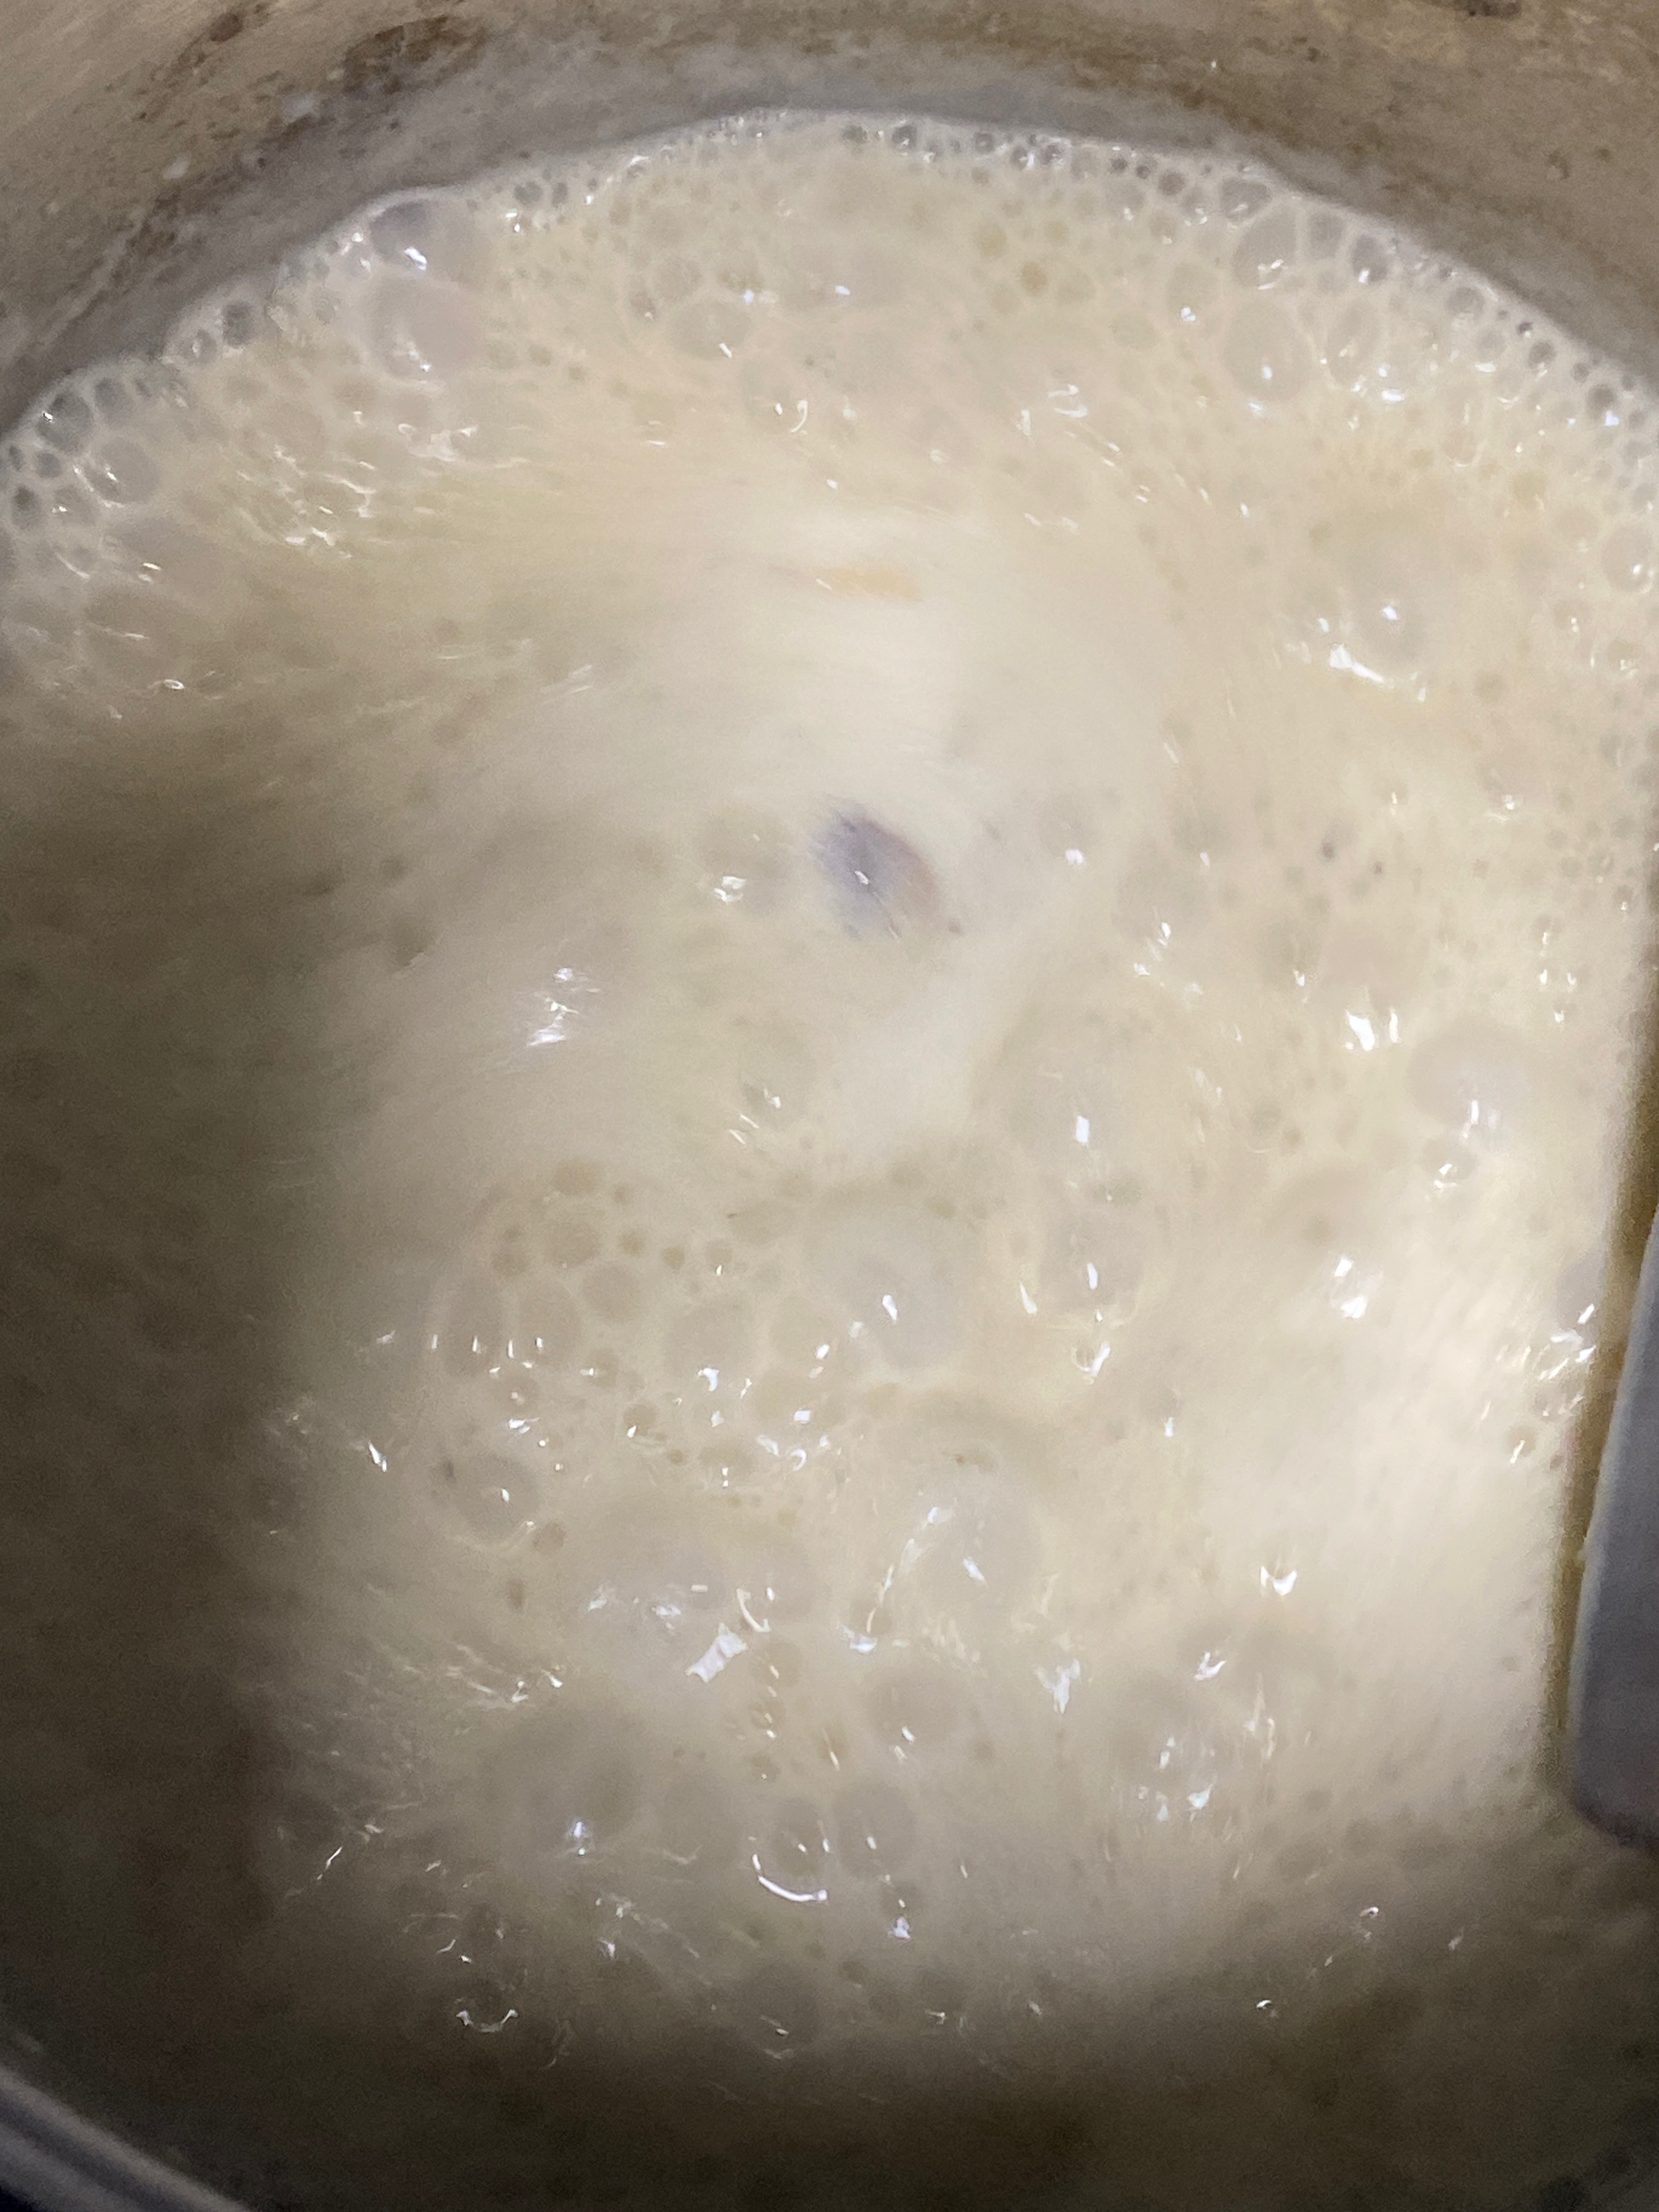 厨房小白一学就会的奶油蘑菇浓汤